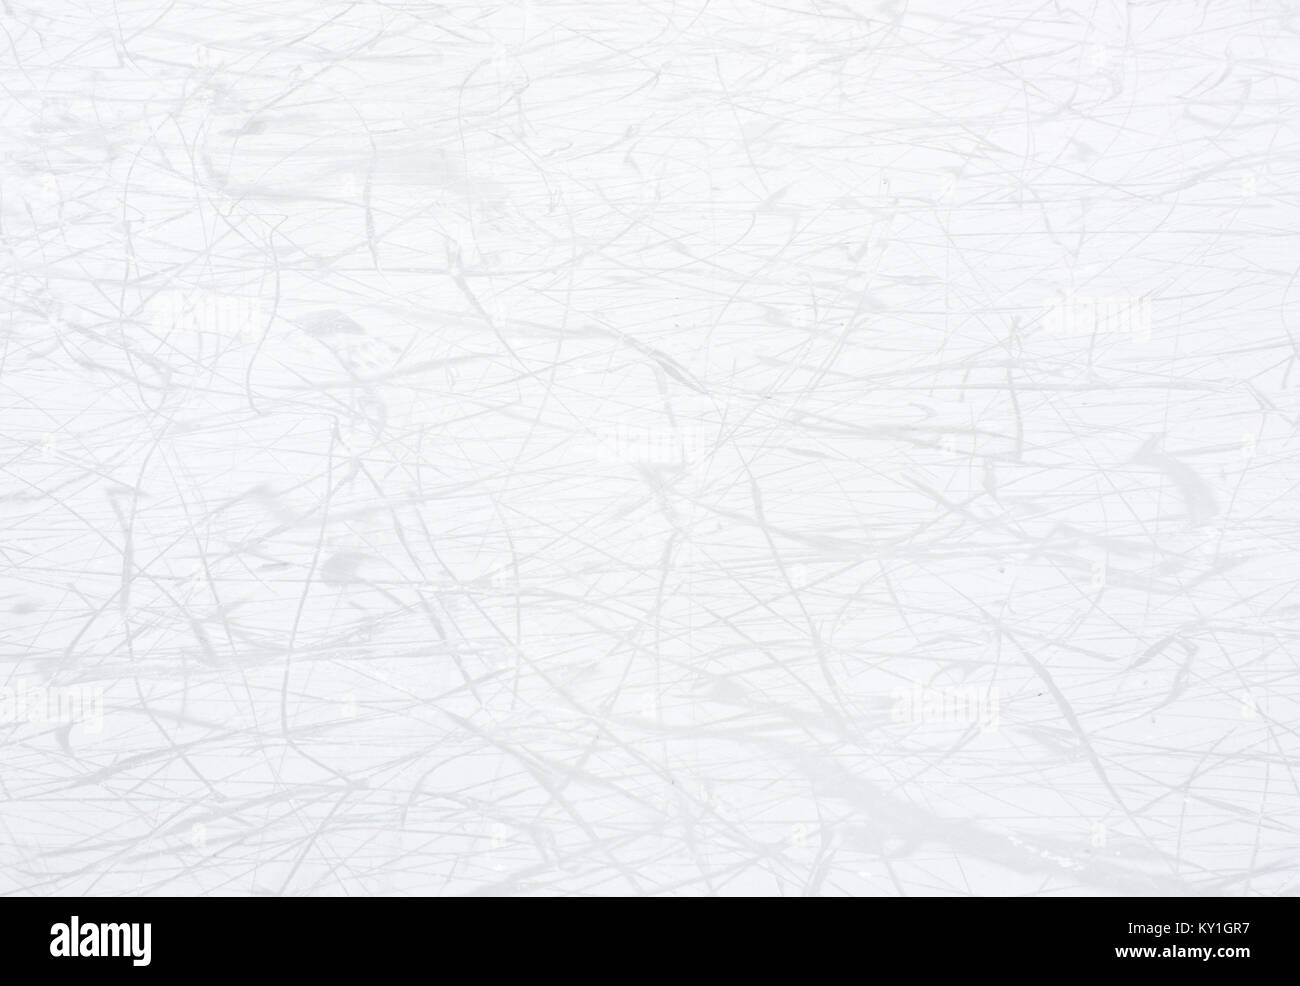 Líneas de garabatear suave abstracto sobre fondo blanco: pista de patinaje sobre hielo en invierno con hoja de detalle las marcas y arañazos Foto de stock